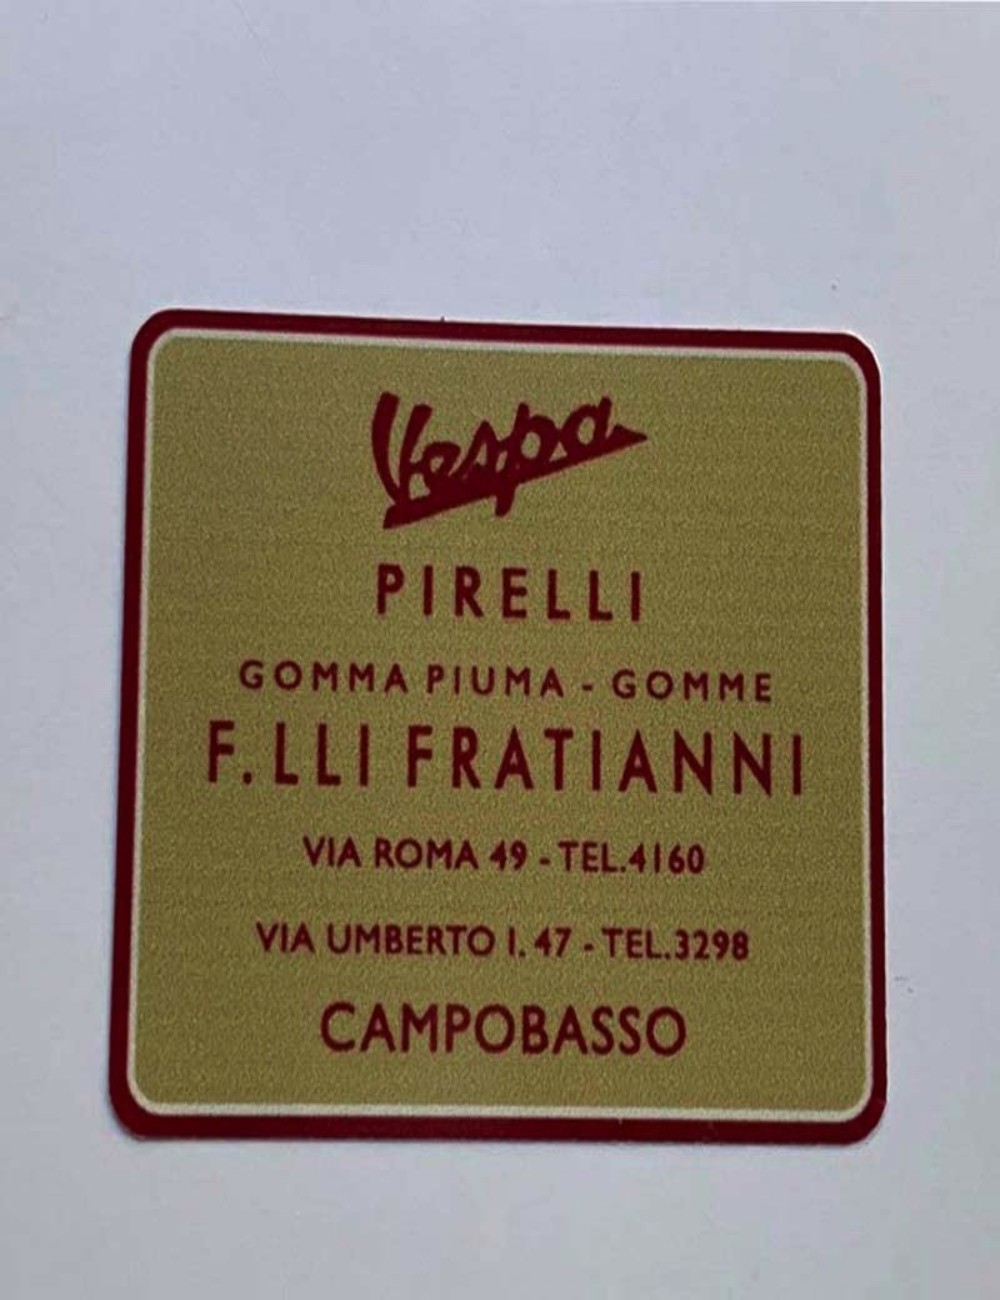 Adesivo concessionario F.lli Fratianni. Dimensioni: 5,2 cm x 4,2 cm